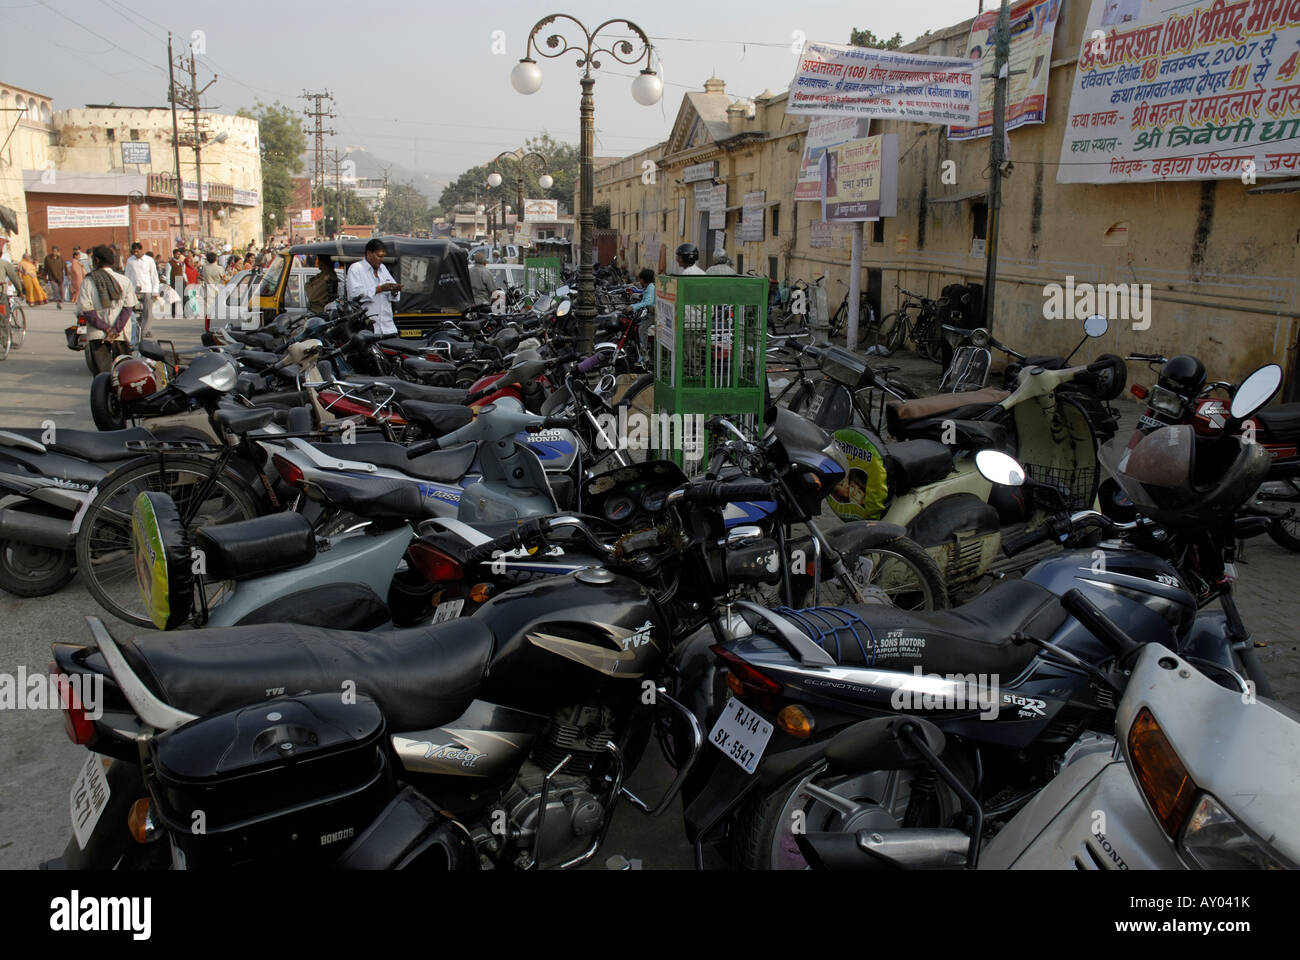 Les motocycles et scooters garés dans une rue de Jaipur Rajasthan Inde Banque D'Images